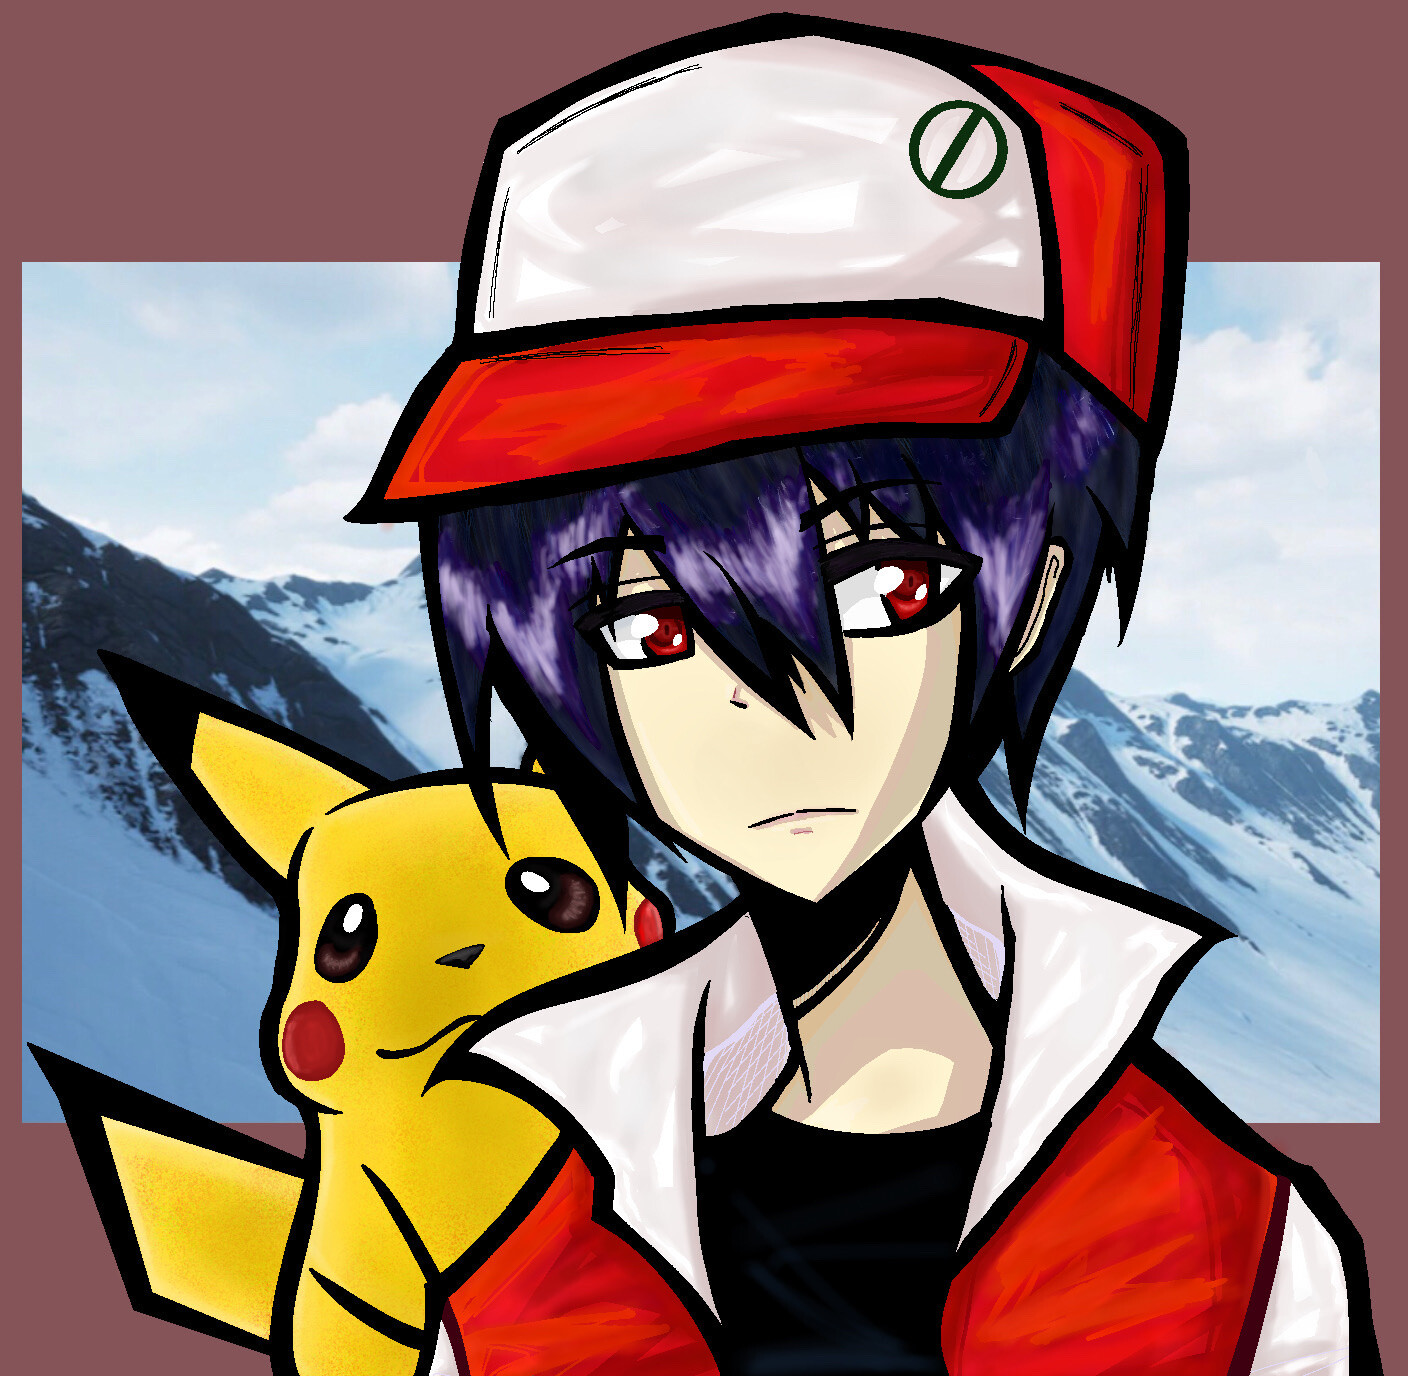 ArtStation - Pokemon trainer Red